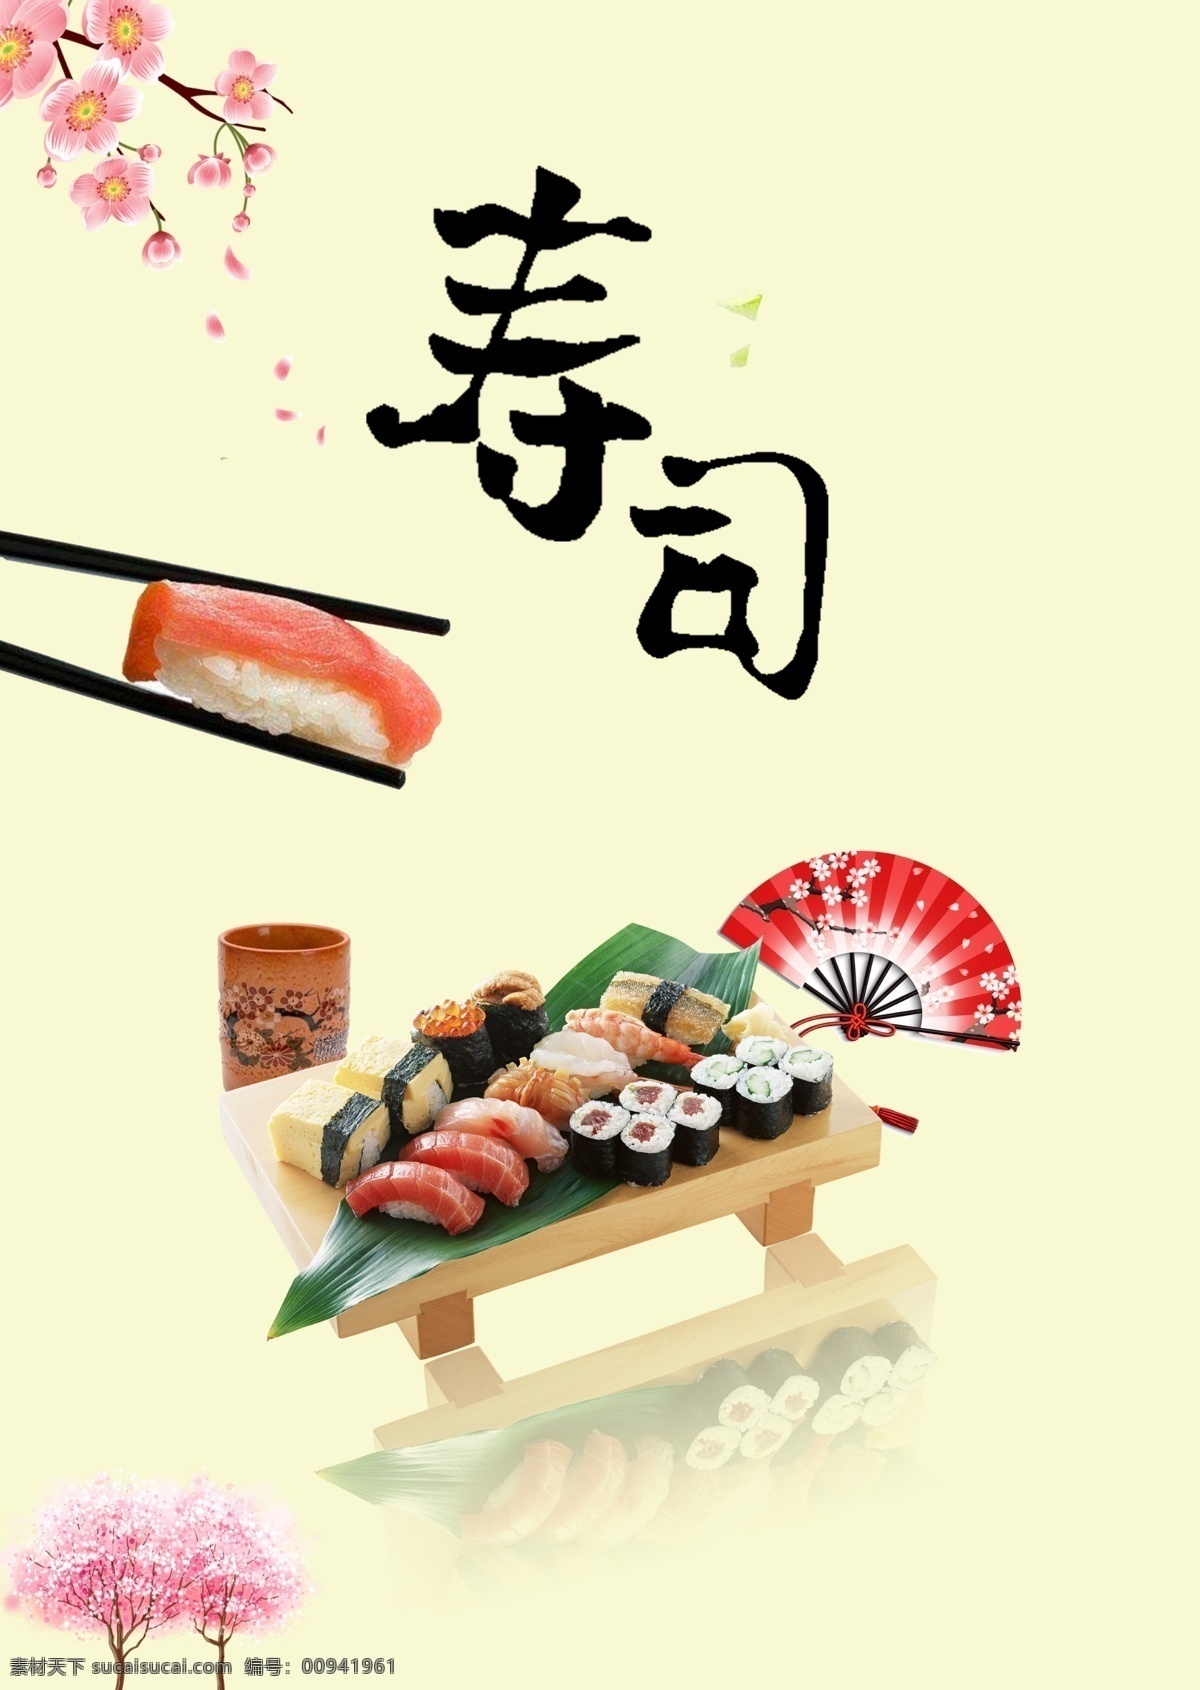 日本寿司海报 寿司 寿司海报 海报 寿司促销 寿司广告